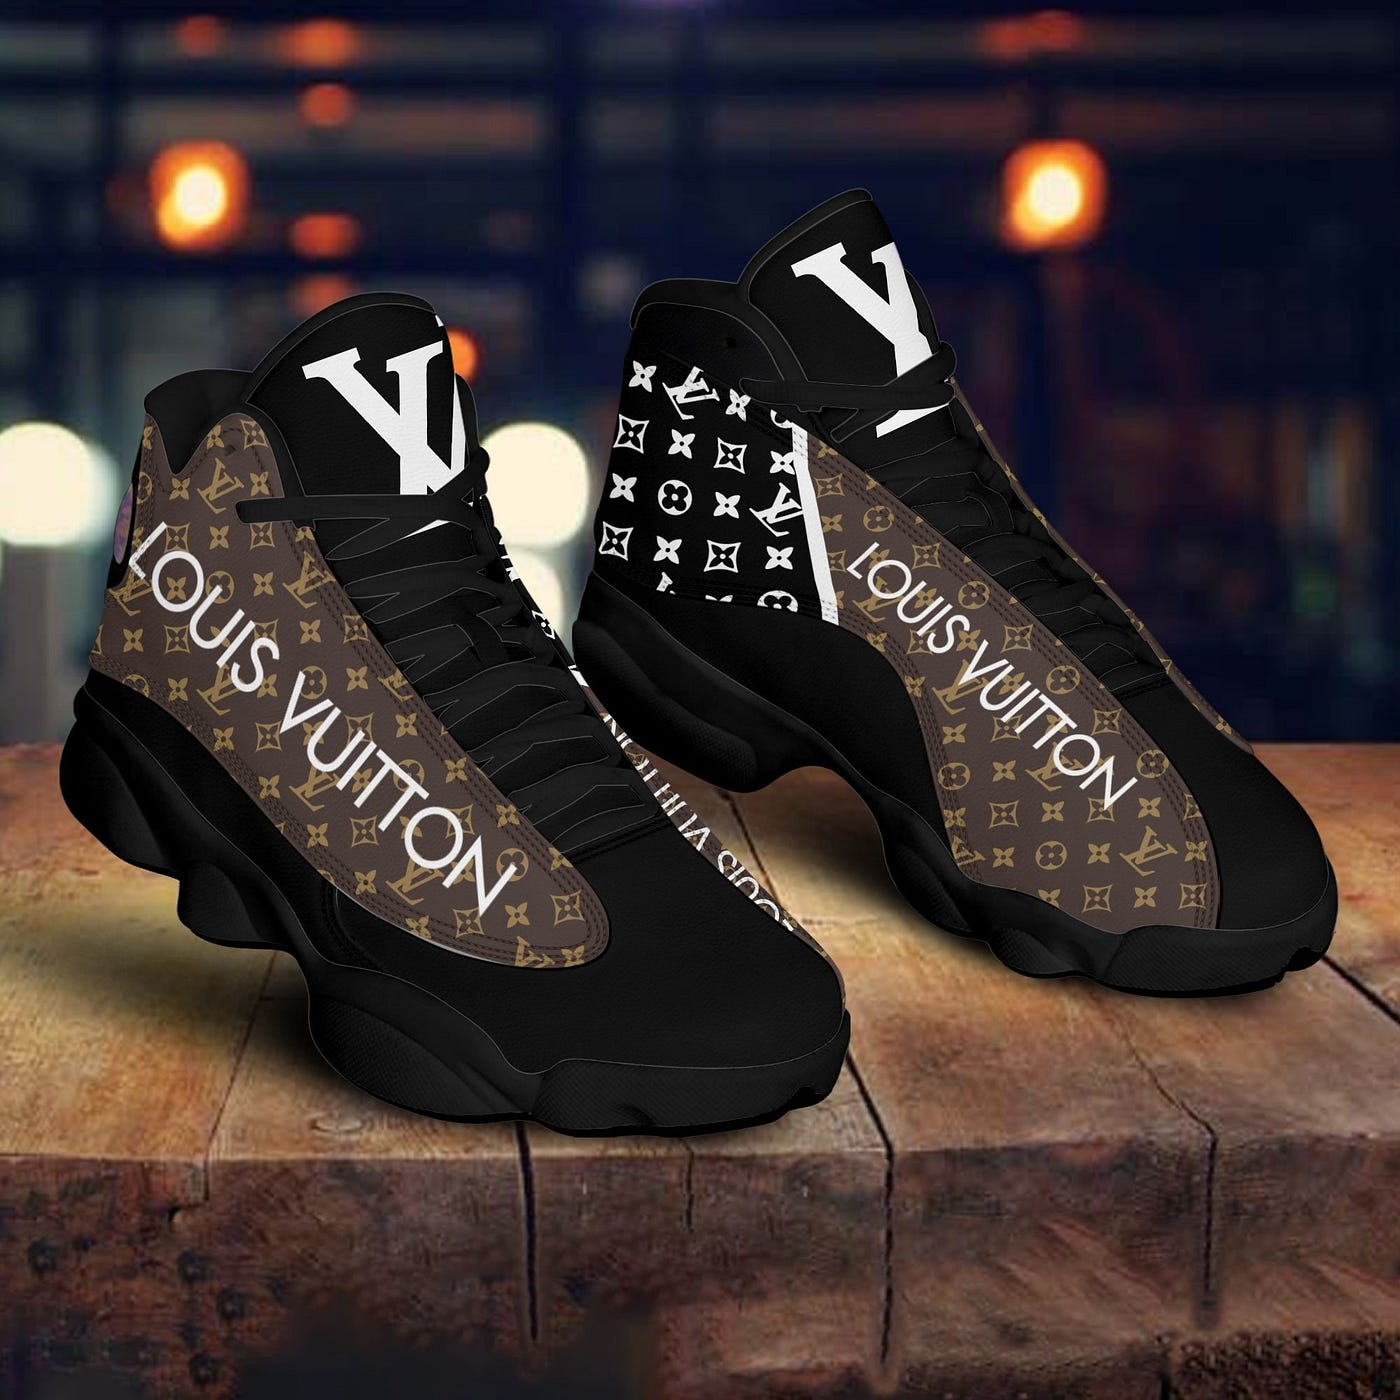 Louis Vuitton Brown Fashion Sneakers